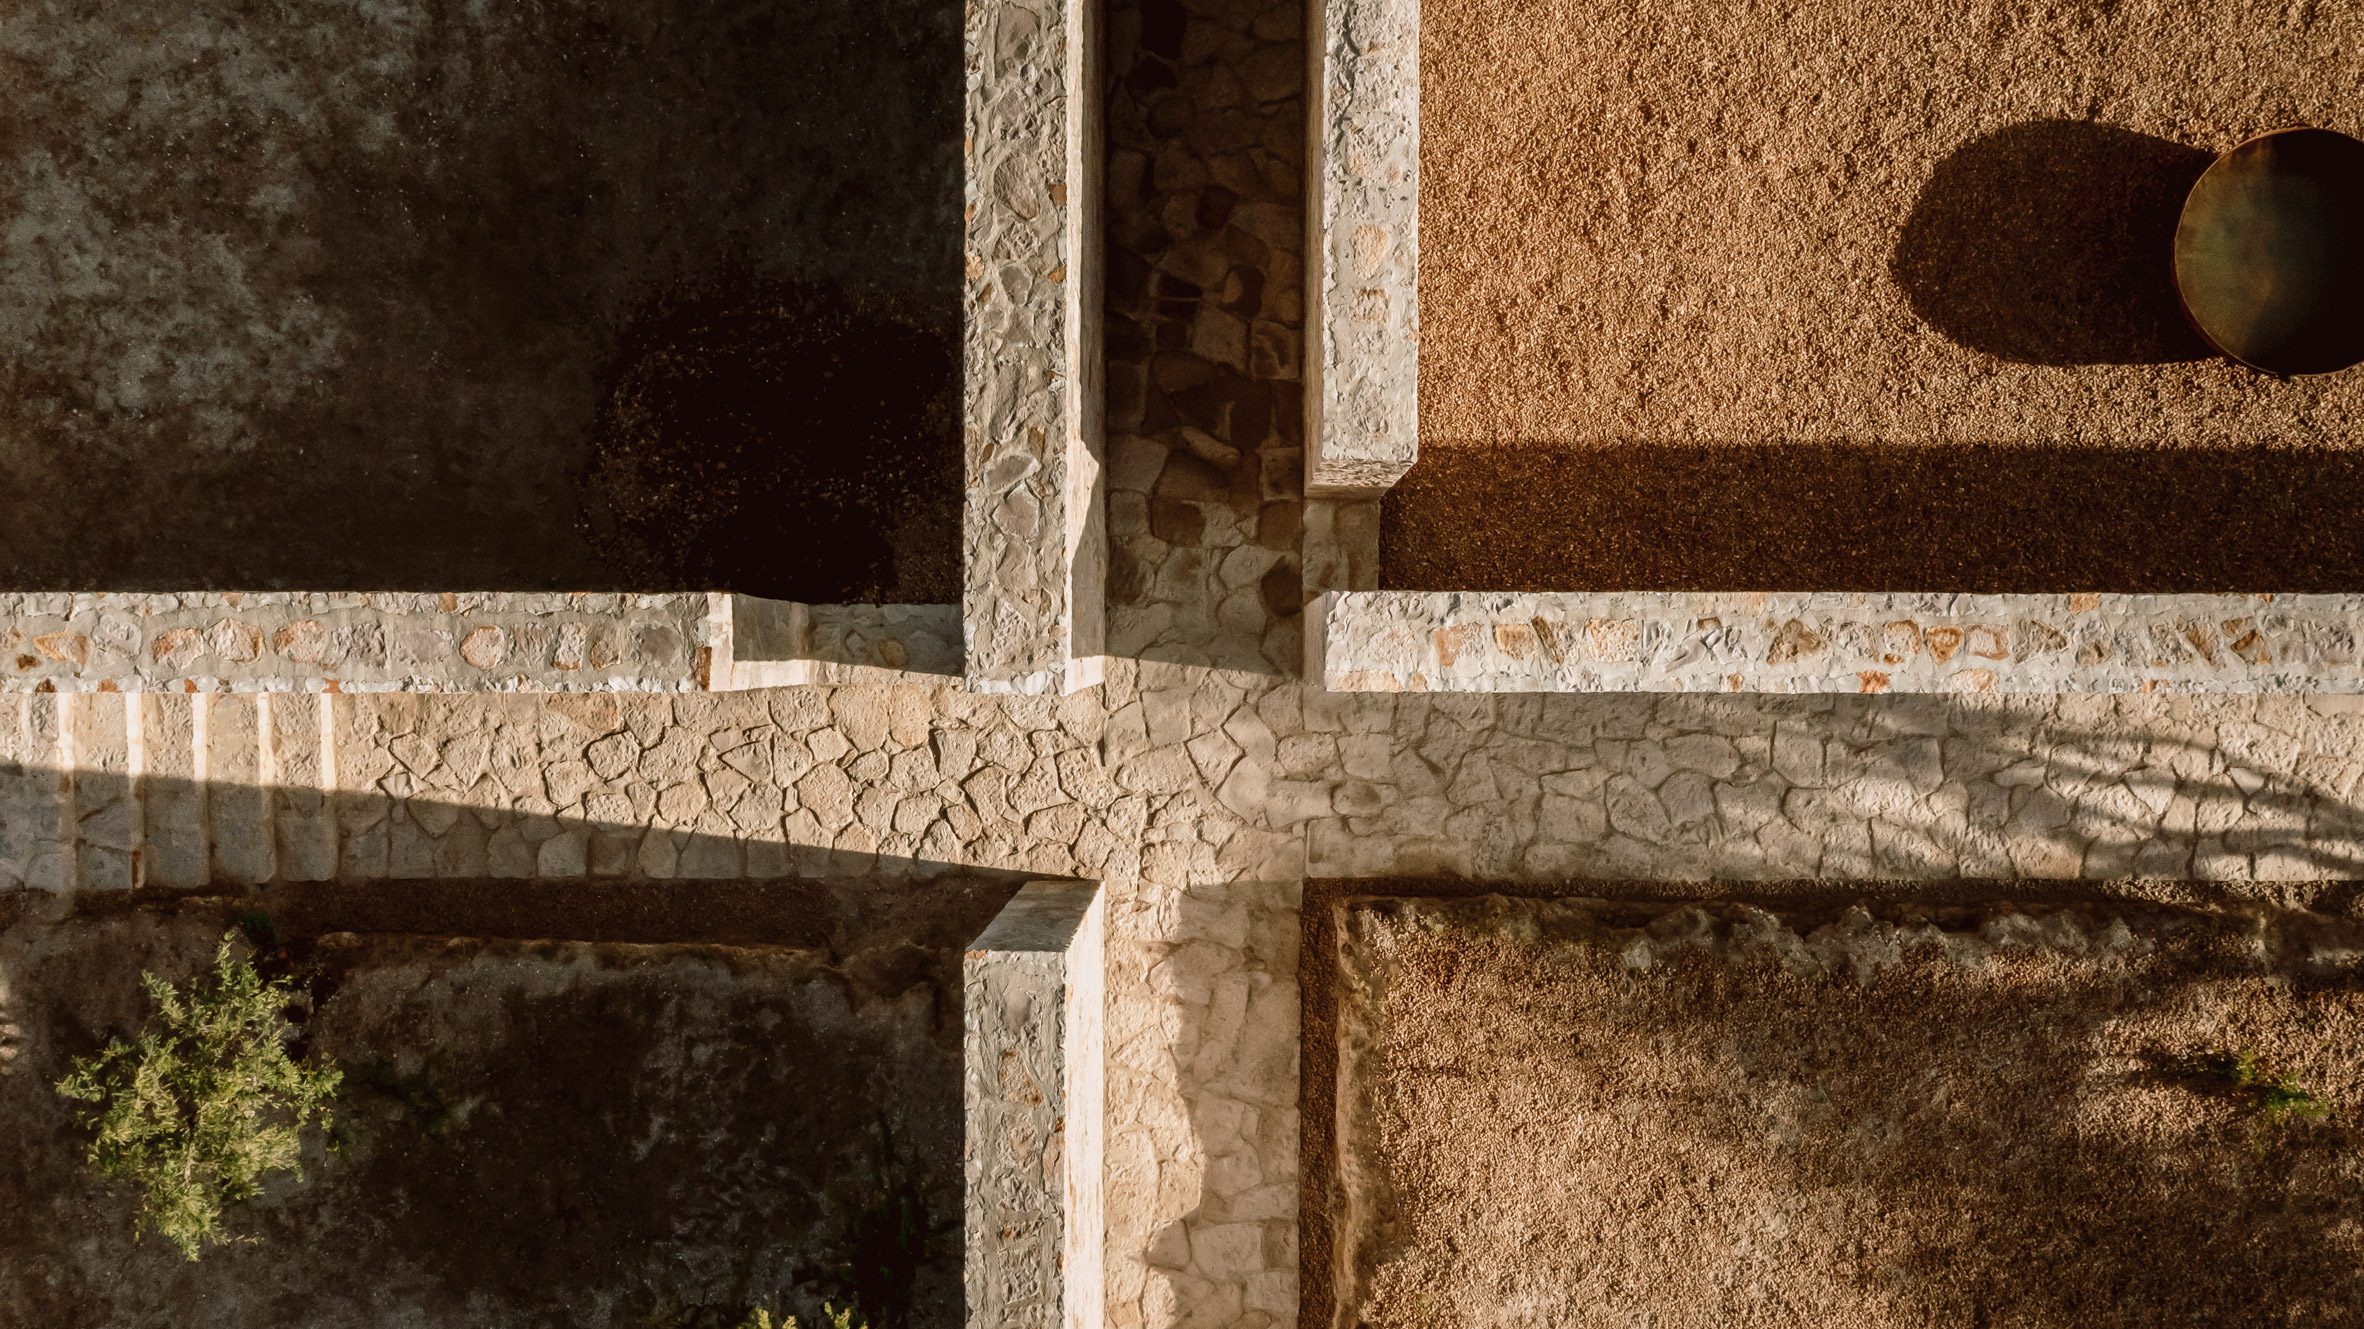 Mexico, San Miguel de Allende. Two wooden crosses against